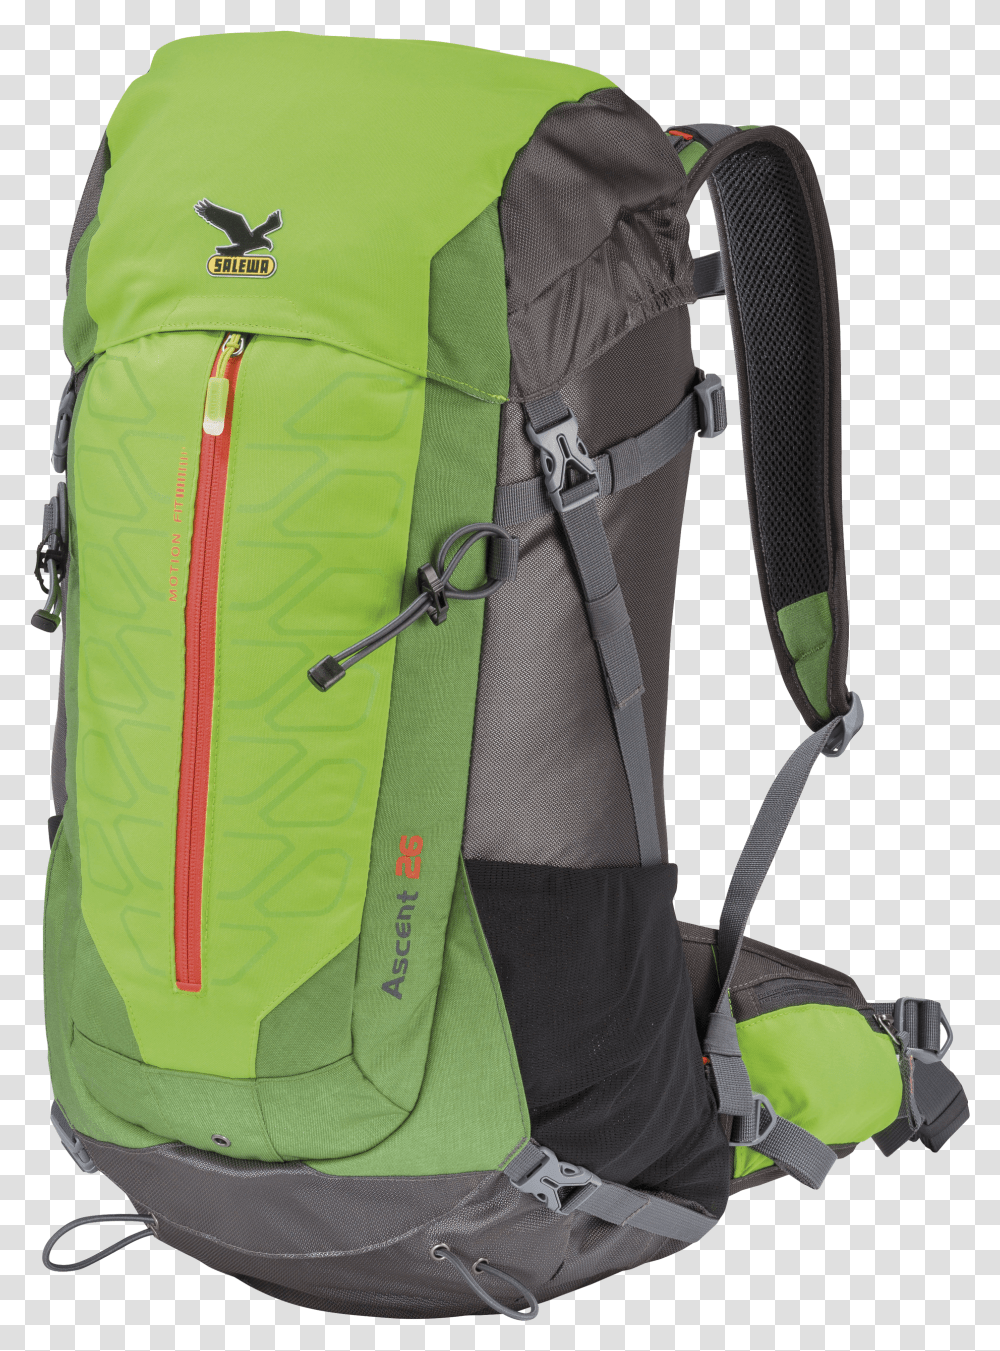 Backpack Image Hiking Backpack Background Transparent Png